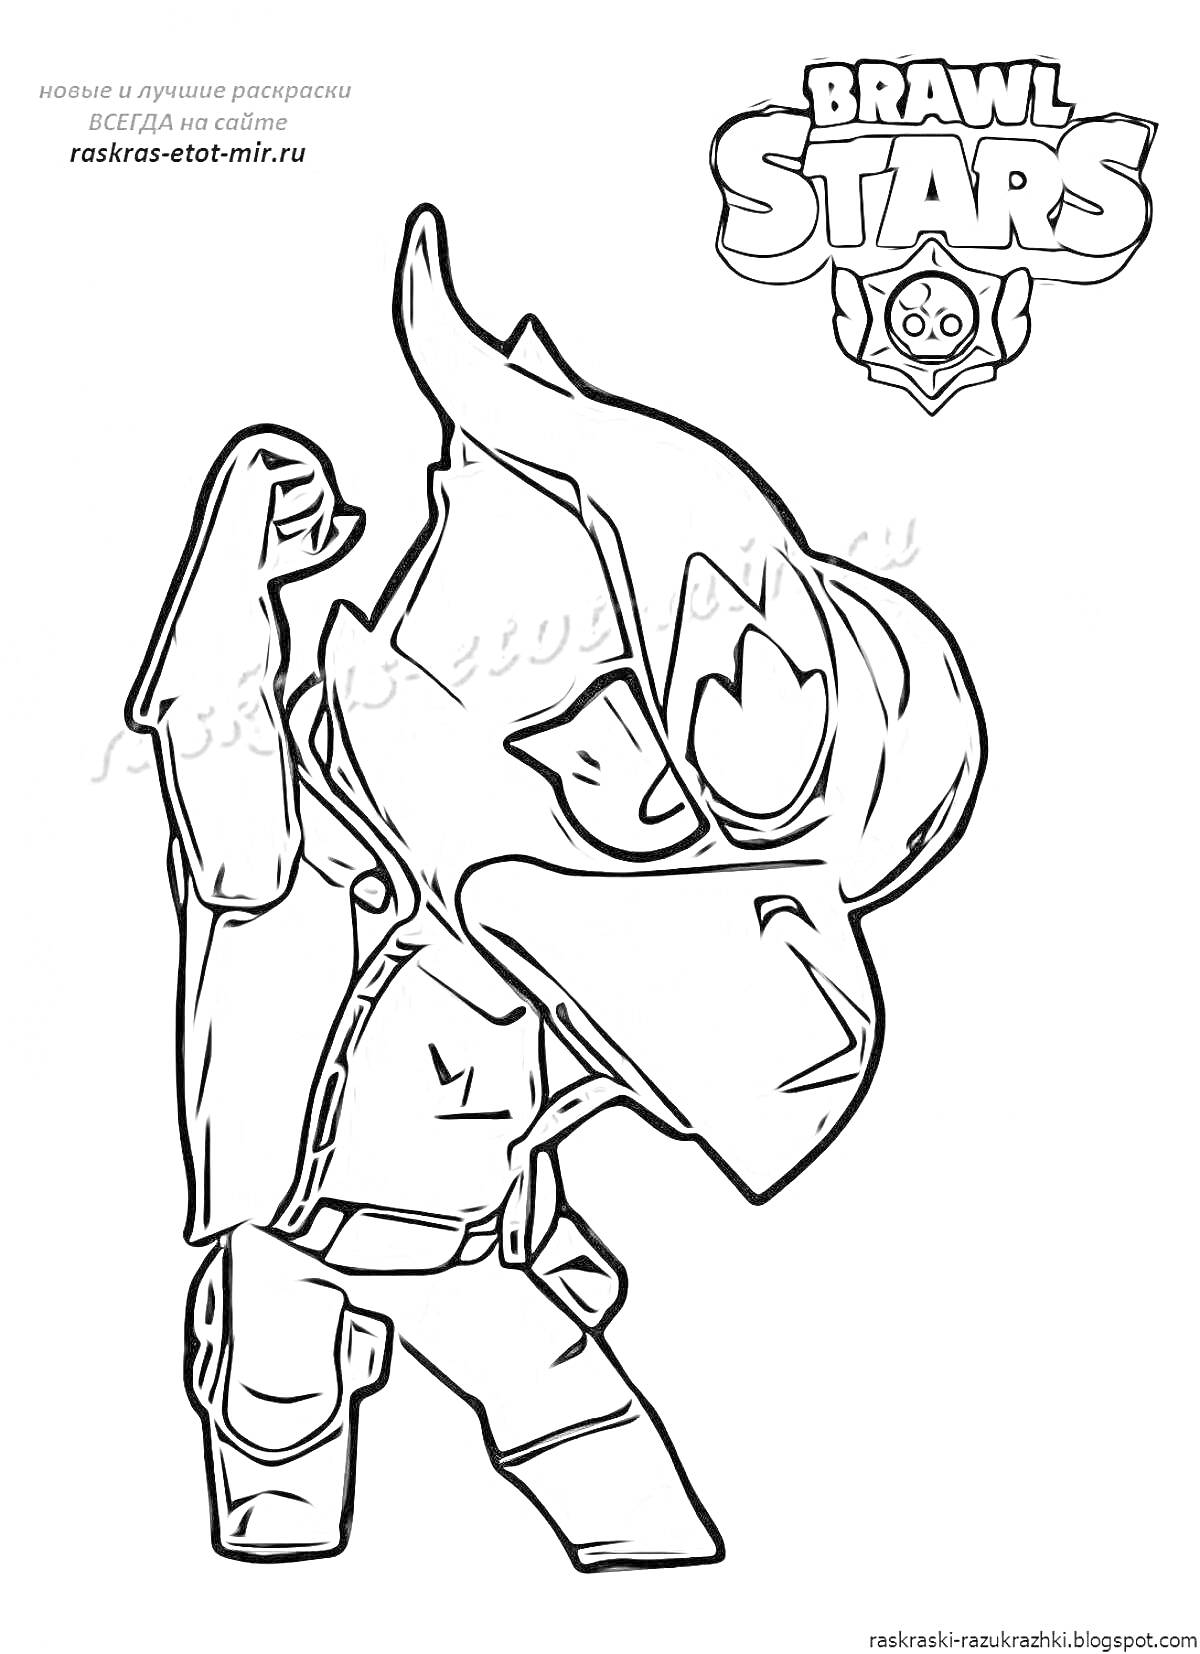 Раскраска Ворон Браво Старс в боевой позе, одетый в куртку с поднятым крылом, с капюшоном на голове и фирменным логотипом игры Brawl Stars в углу.